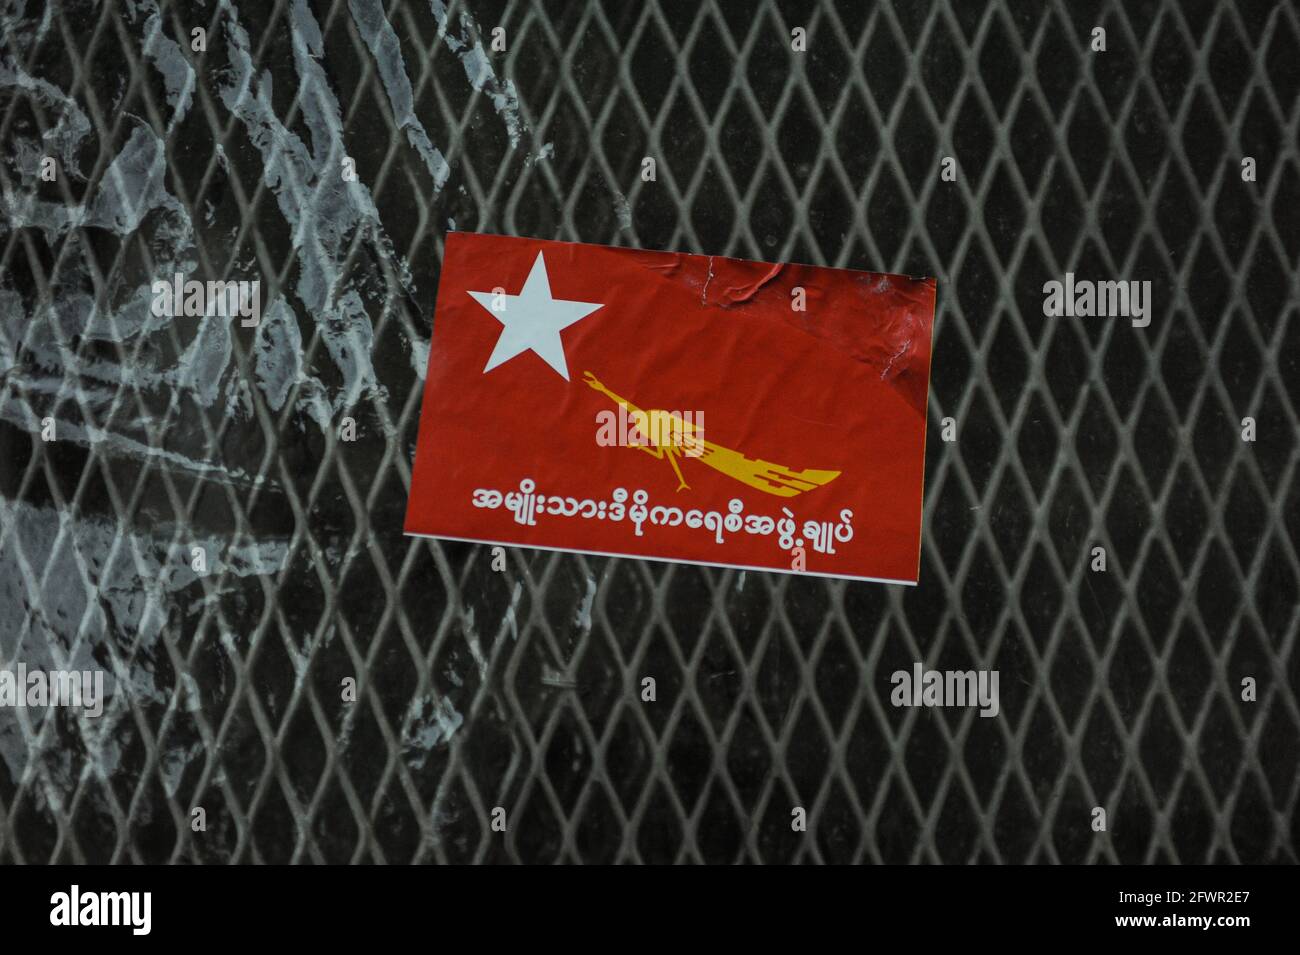 29.10.2015, Yangon, Myanmar, Asia - UN adesivo rosso con il logo e la scritta del partito NLD (Lega Nazionale per la democrazia) è bloccato su una recinzione. Foto Stock